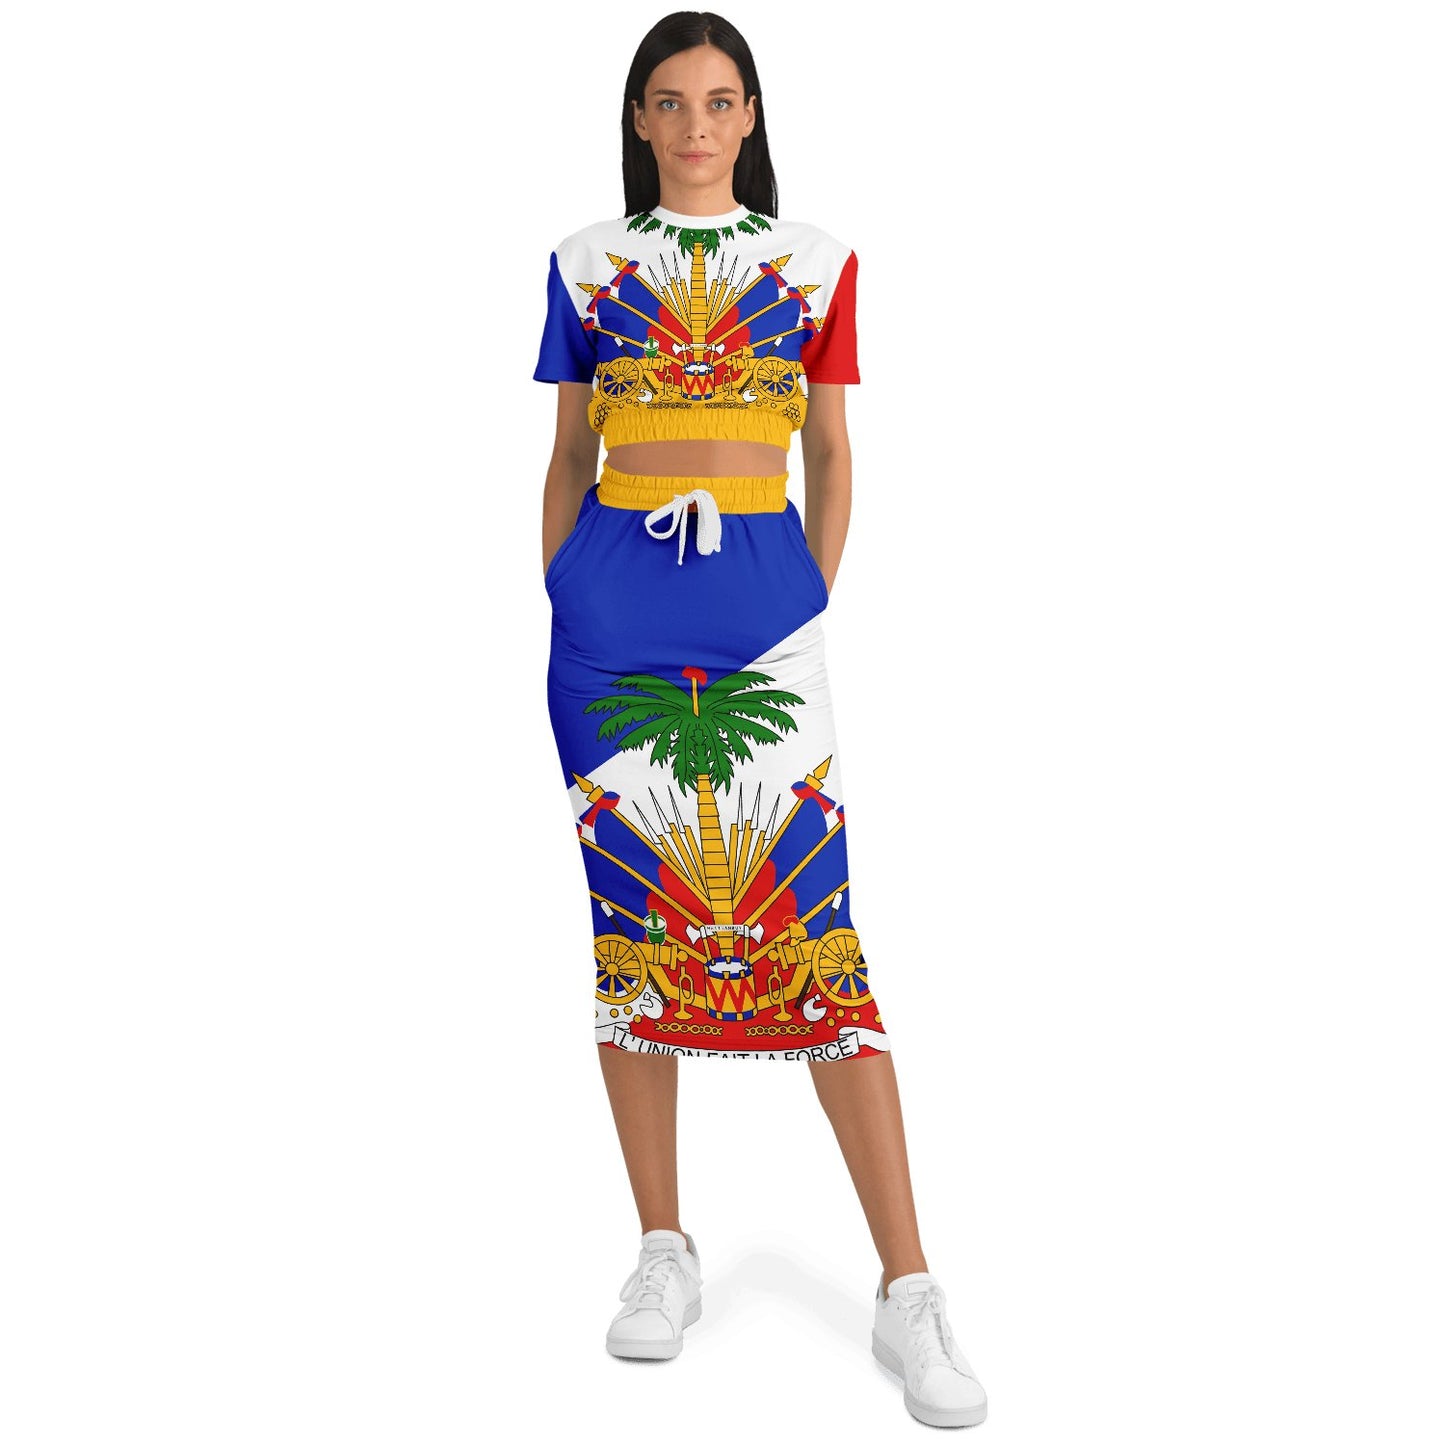 COAT OF ARMS OF HAITI Fashion Cropped Short Sleeve Sweatshirt and Long Pocket Skirt - Haitianbuy